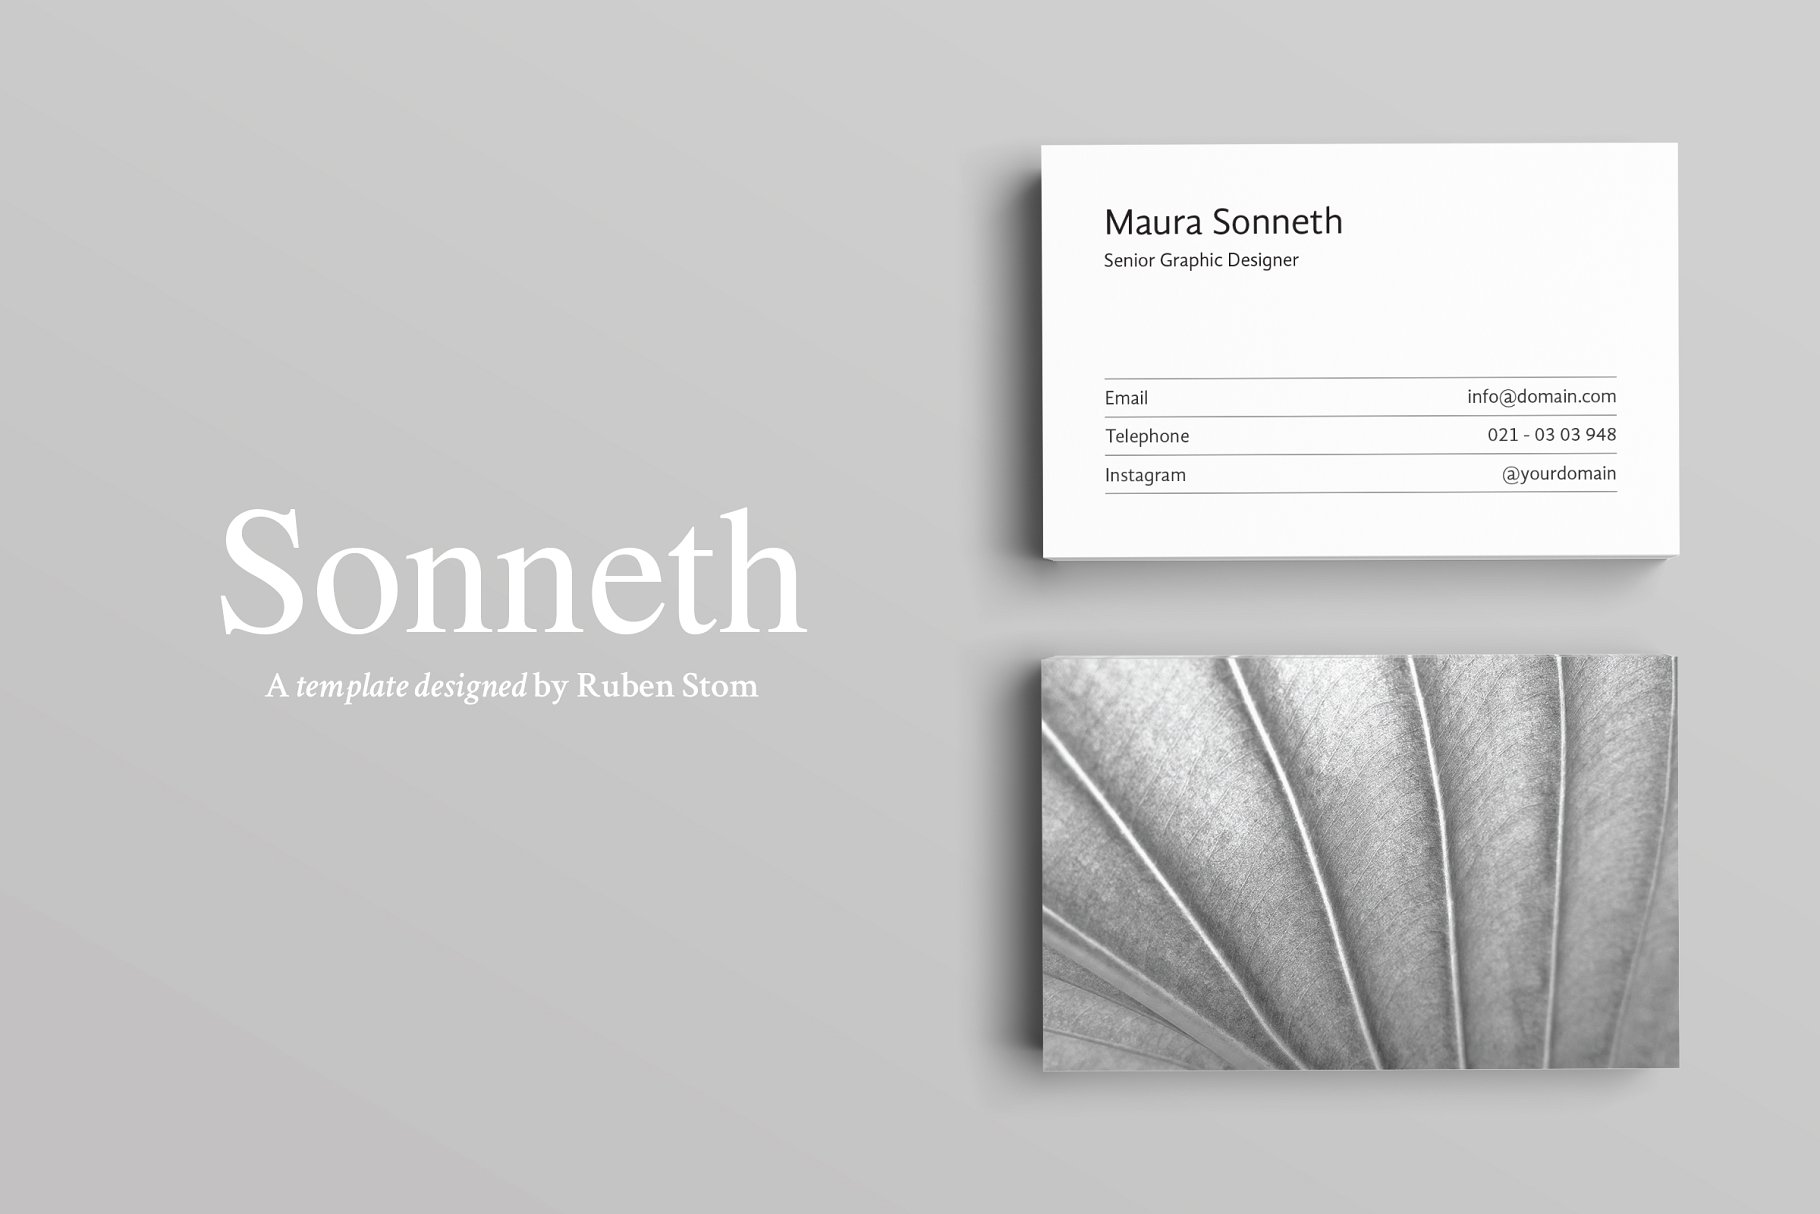 极简主义设计风格企业名片设计模板 Sonneth Business Card Template插图